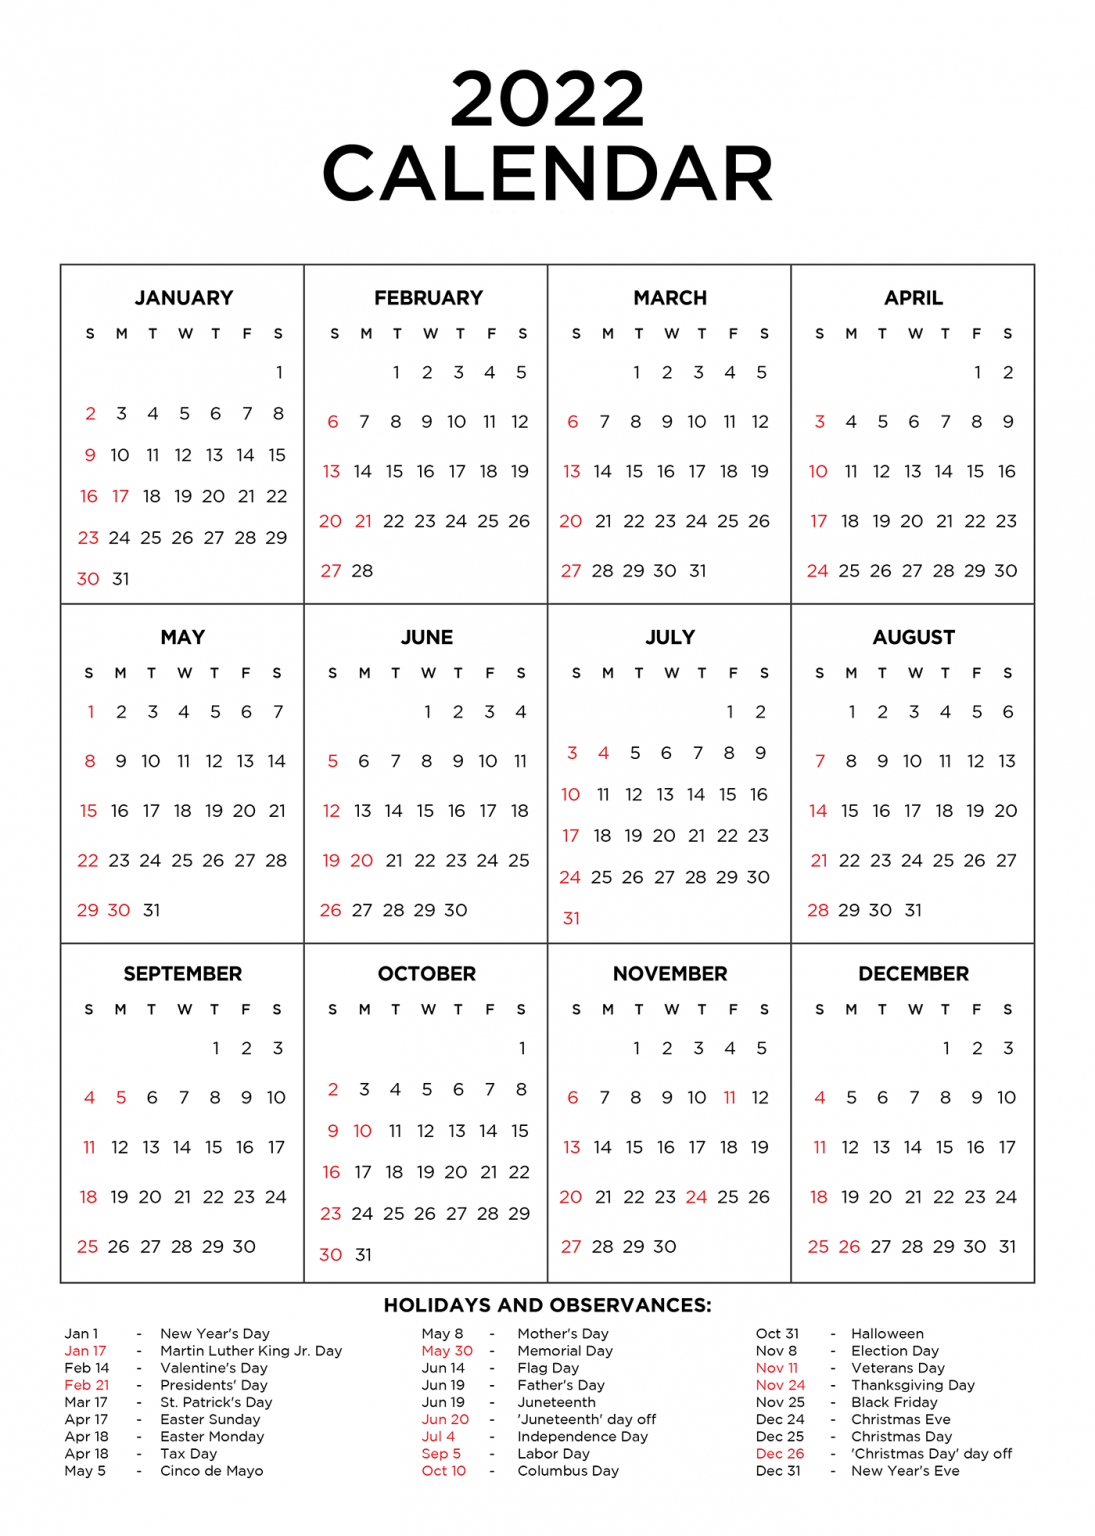 Year 2022 Calendar Printable With Holidays - Kis Study